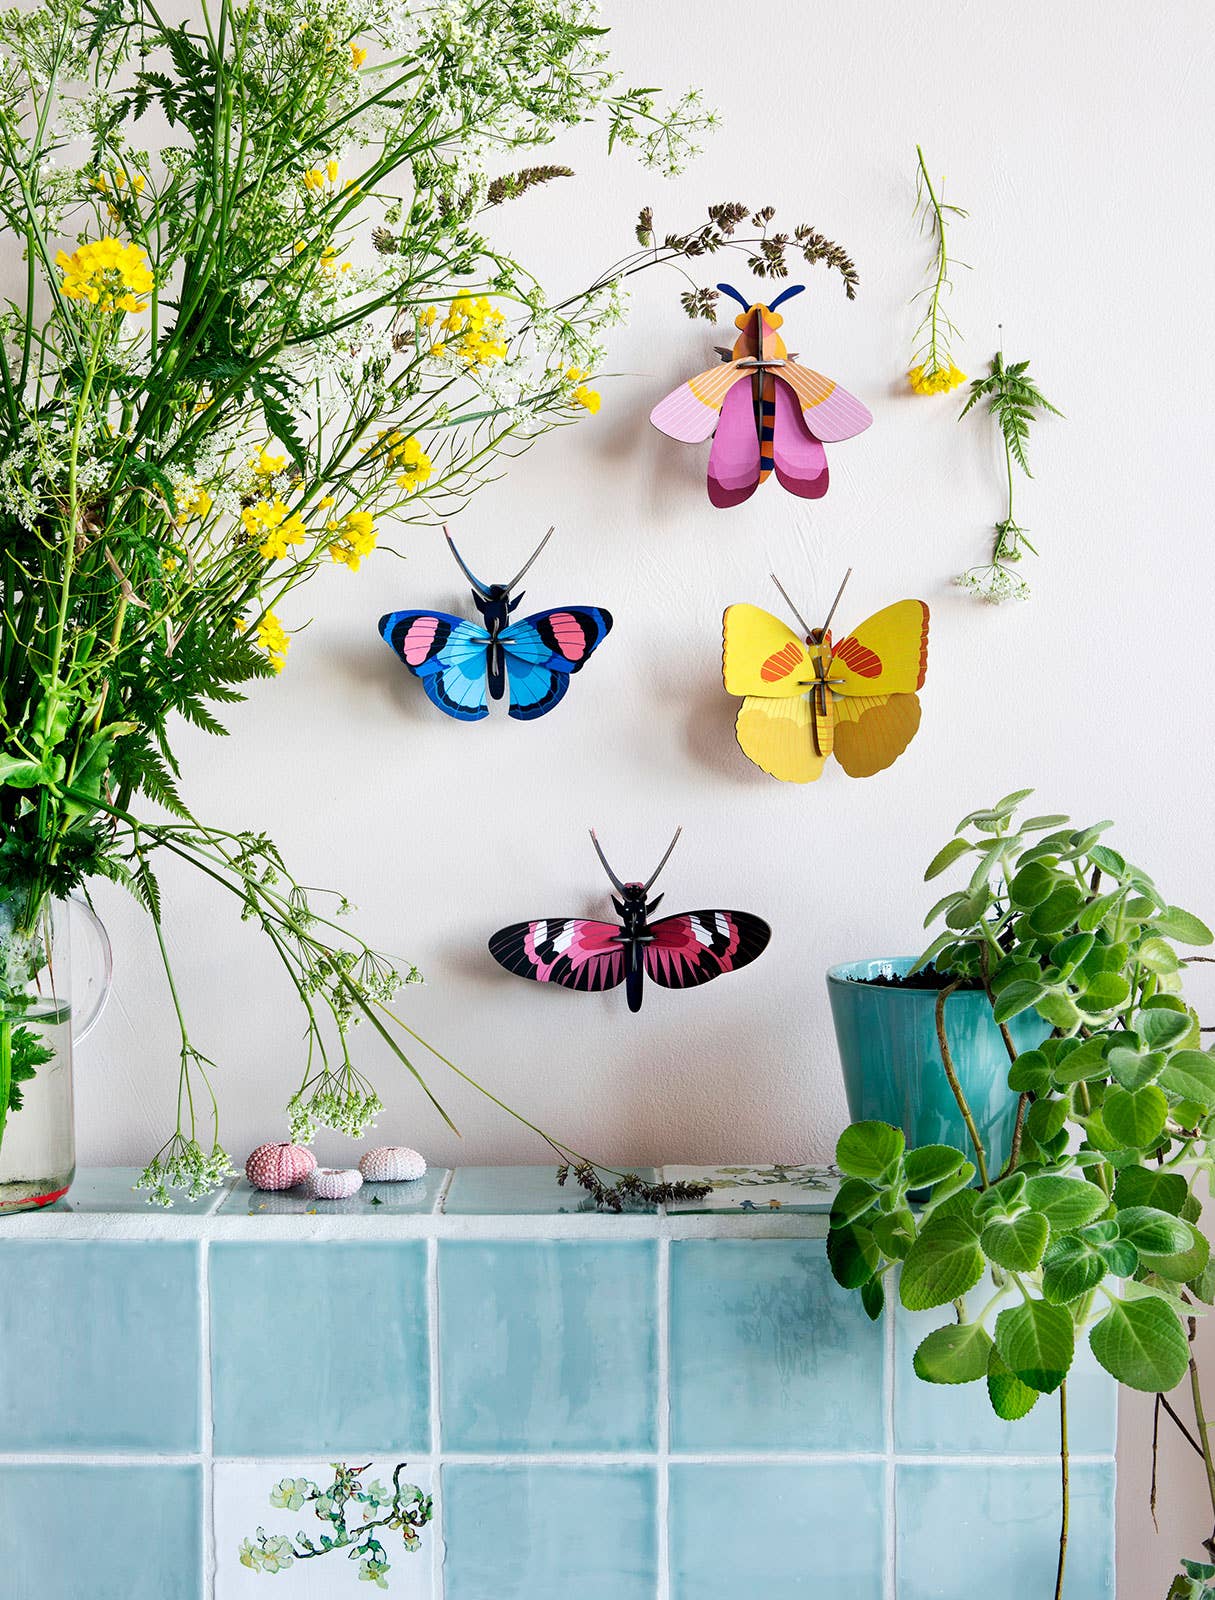 Yellow Butterfly - 3D Wall Art Craft Kit